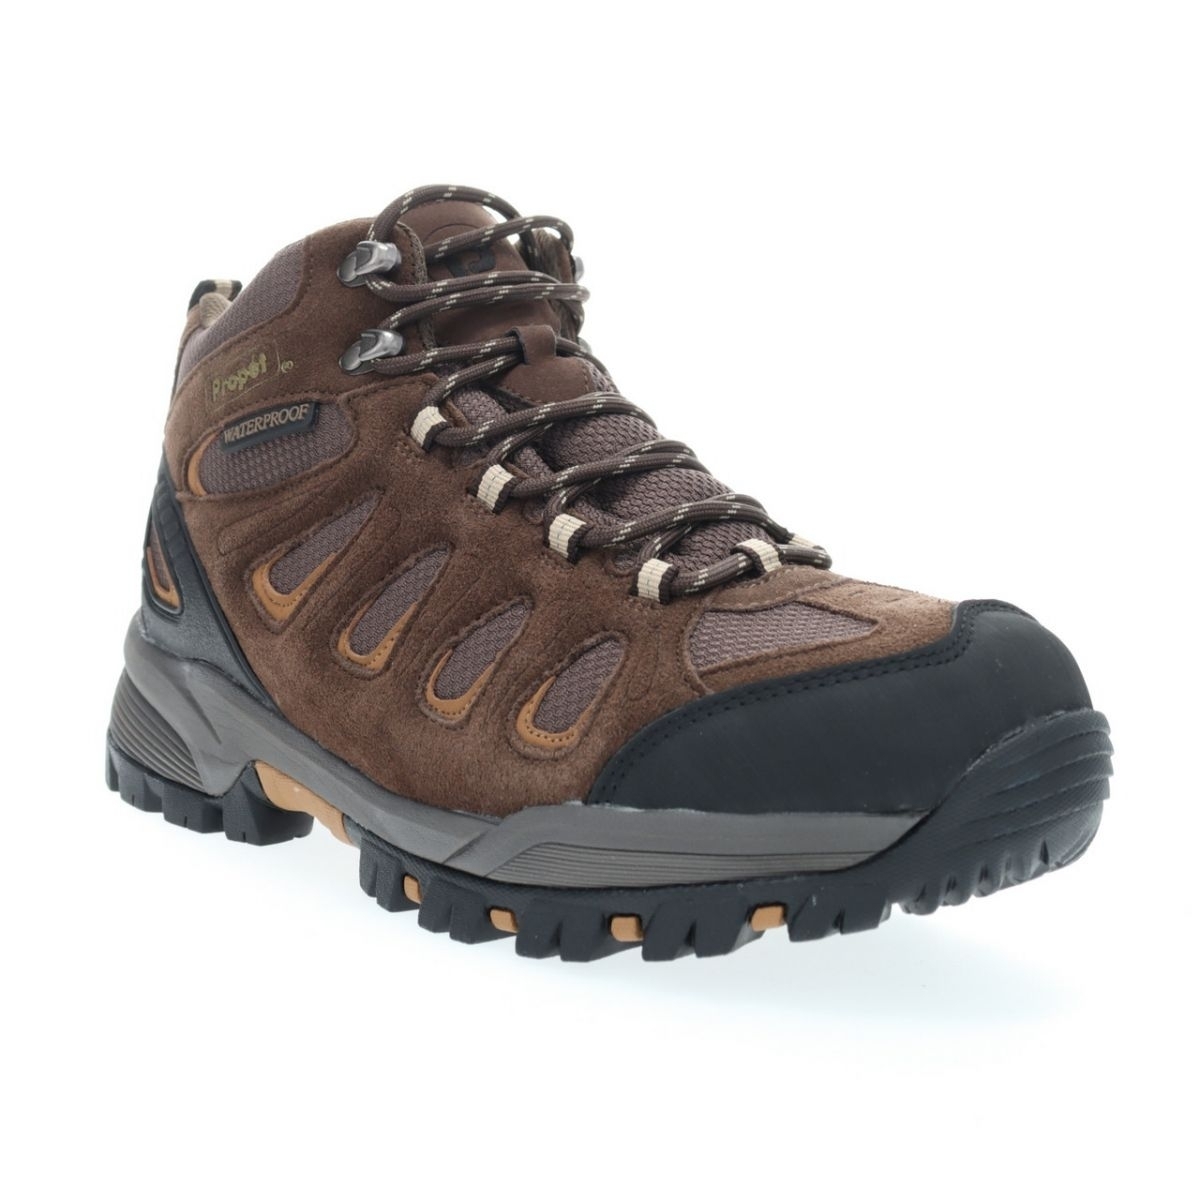 Propet Men's Ridge Walker Hiking Boot Brown - M3599BR 8 XX US Men BROWN - BROWN, 13